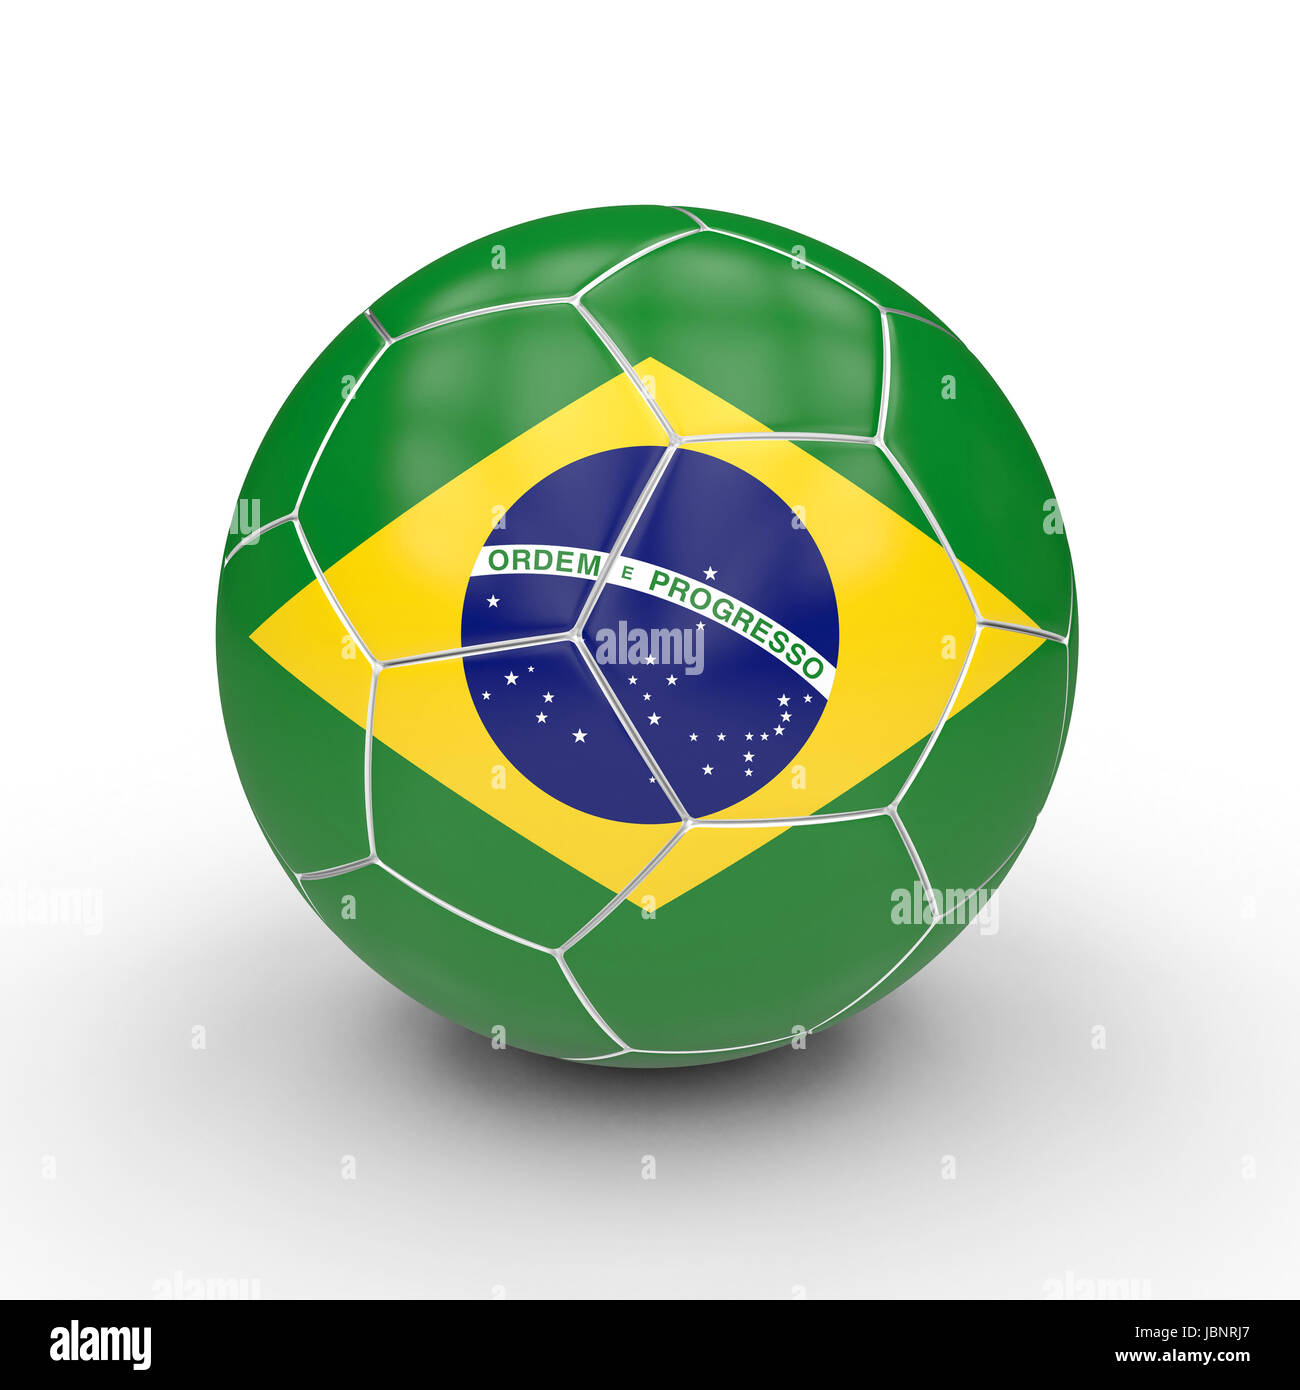 soccer ball brasil flag 3d rendering image Stock Photo - Alamy